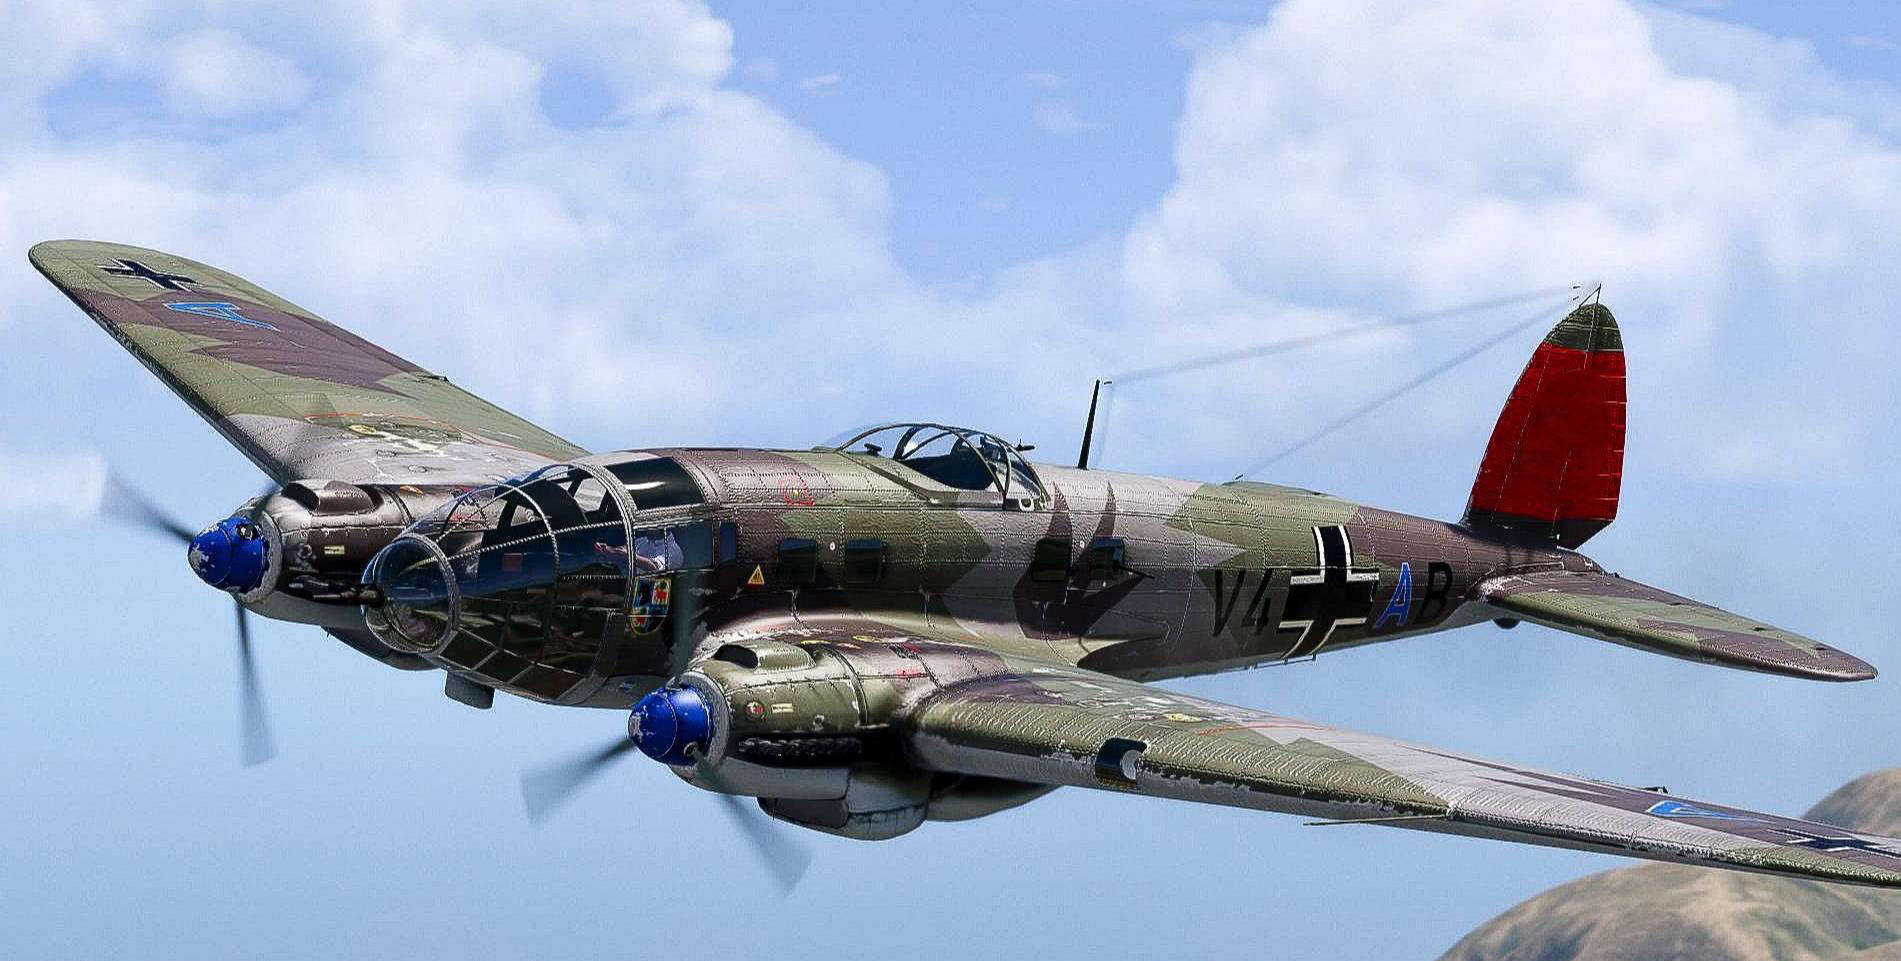 它是二战期间德国空军最大的轰炸机,虽然德军没有真正意义上的战略